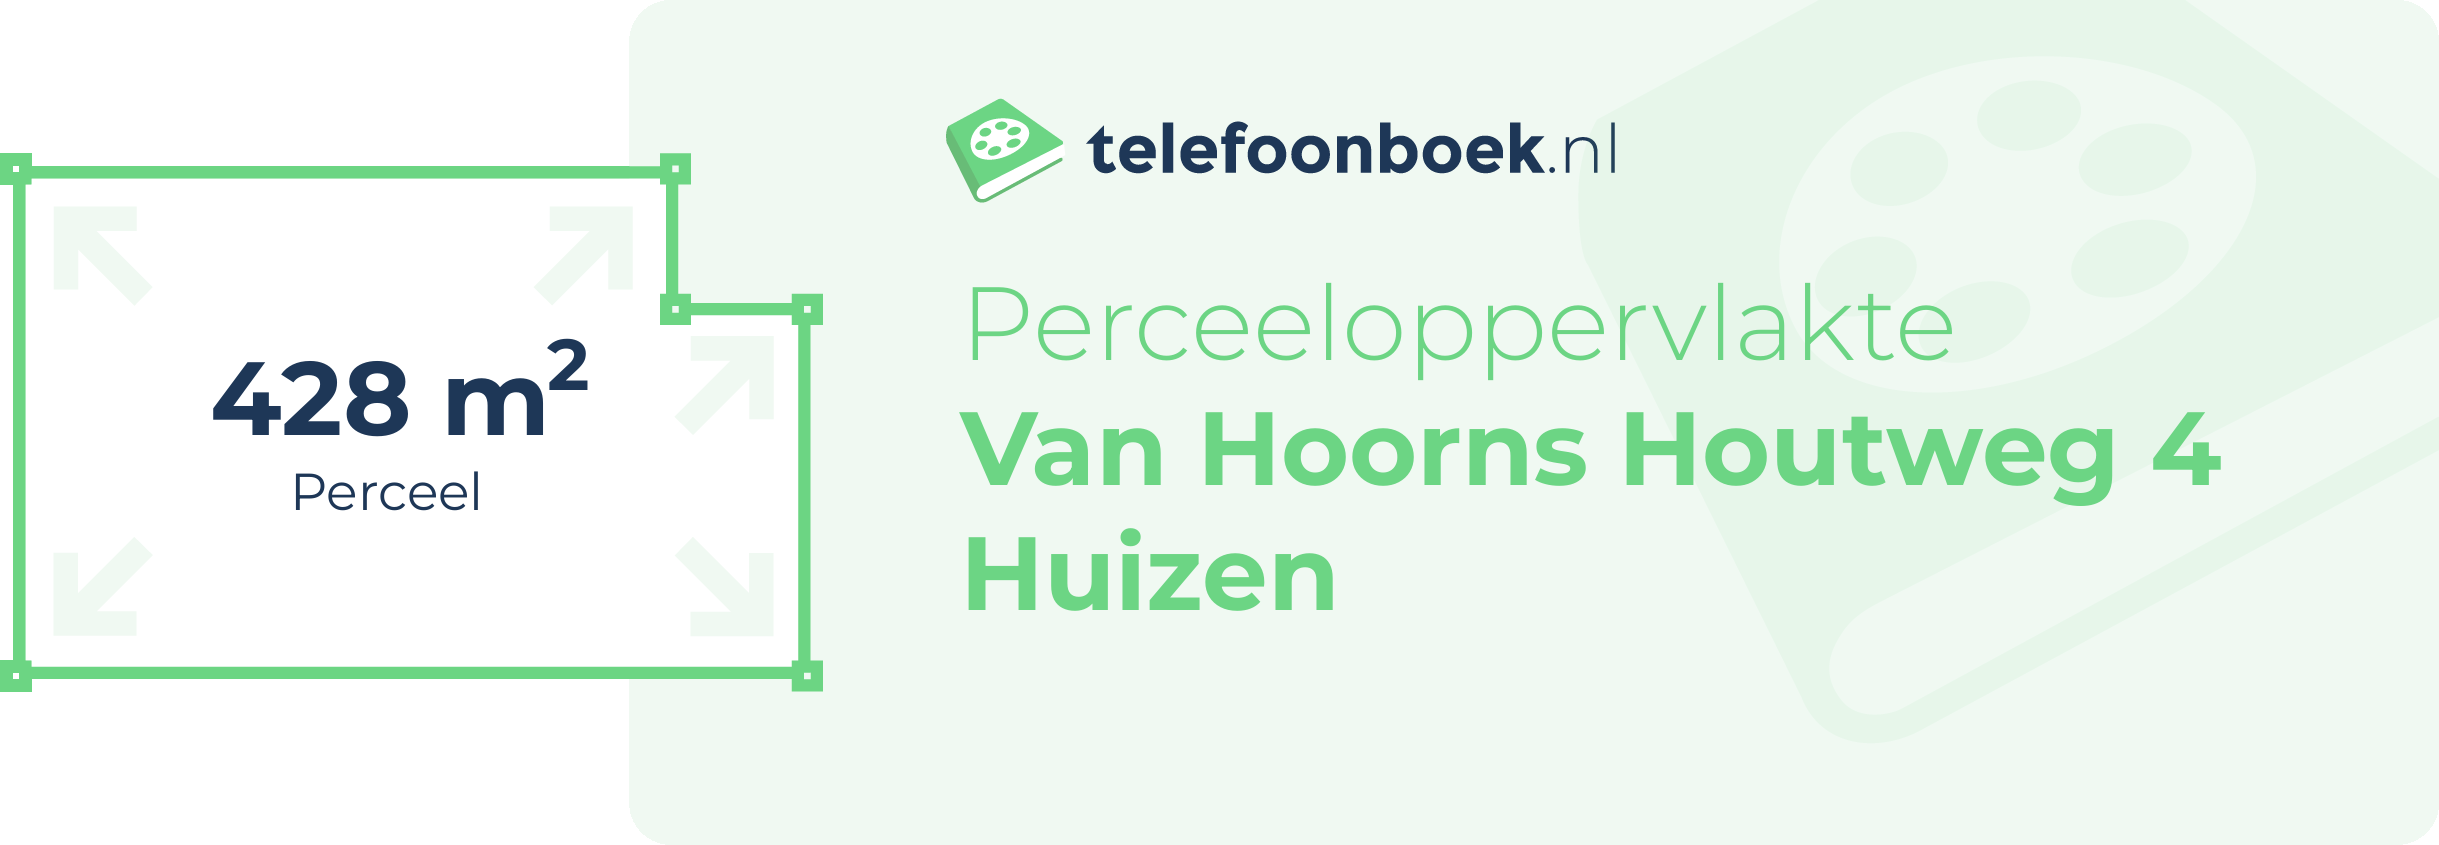 Perceeloppervlakte Van Hoorns Houtweg 4 Huizen